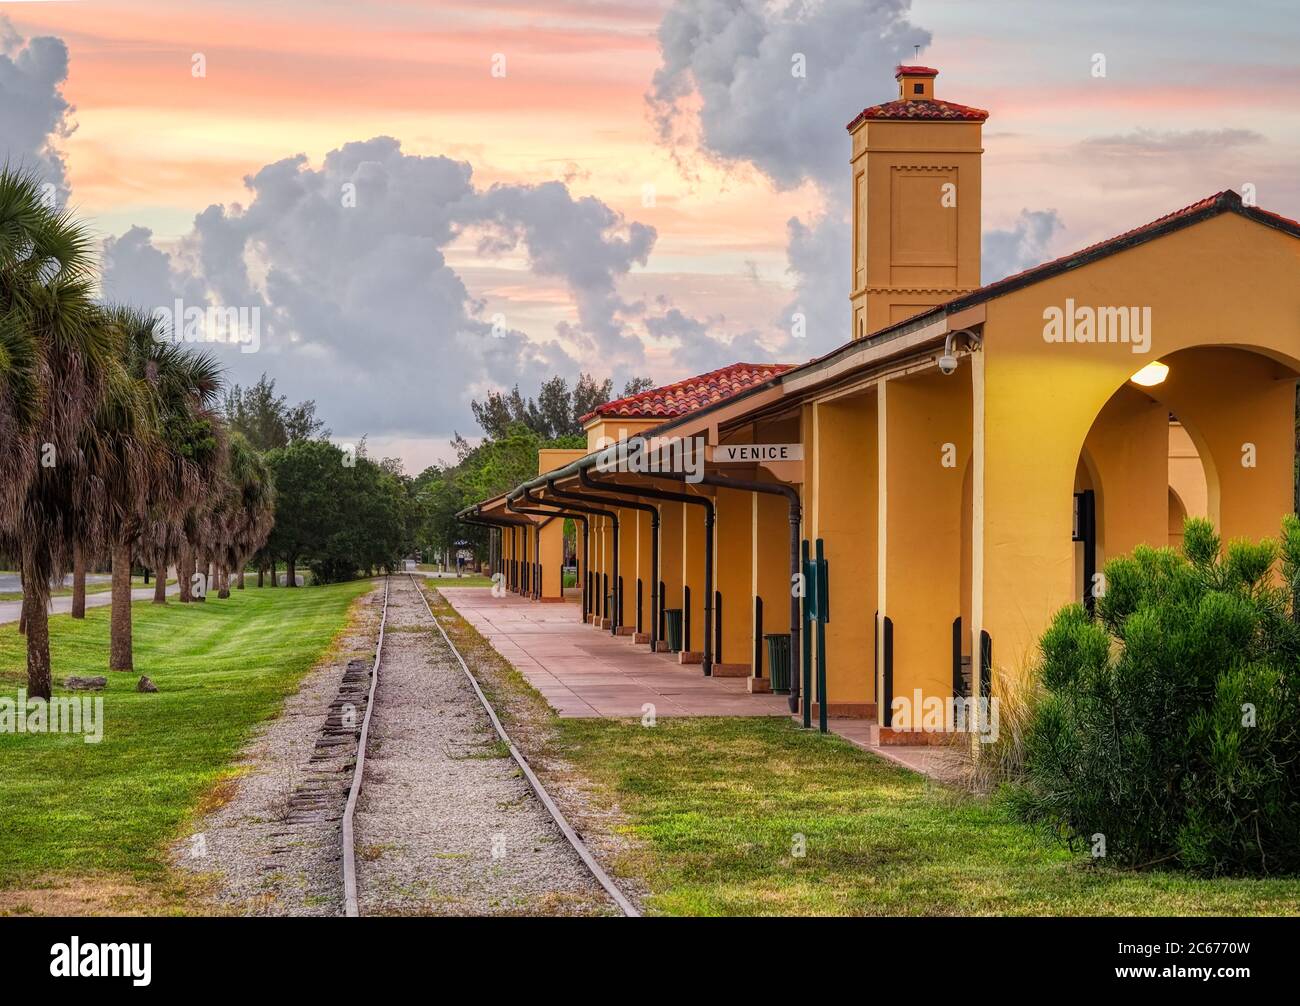 Das historische Mediterranean Revival Stil Venice Train Depot erbaut 1927 von der Seaboard Air Line Railway in Venice Florida in den Vereinigten Staaten Stockfoto